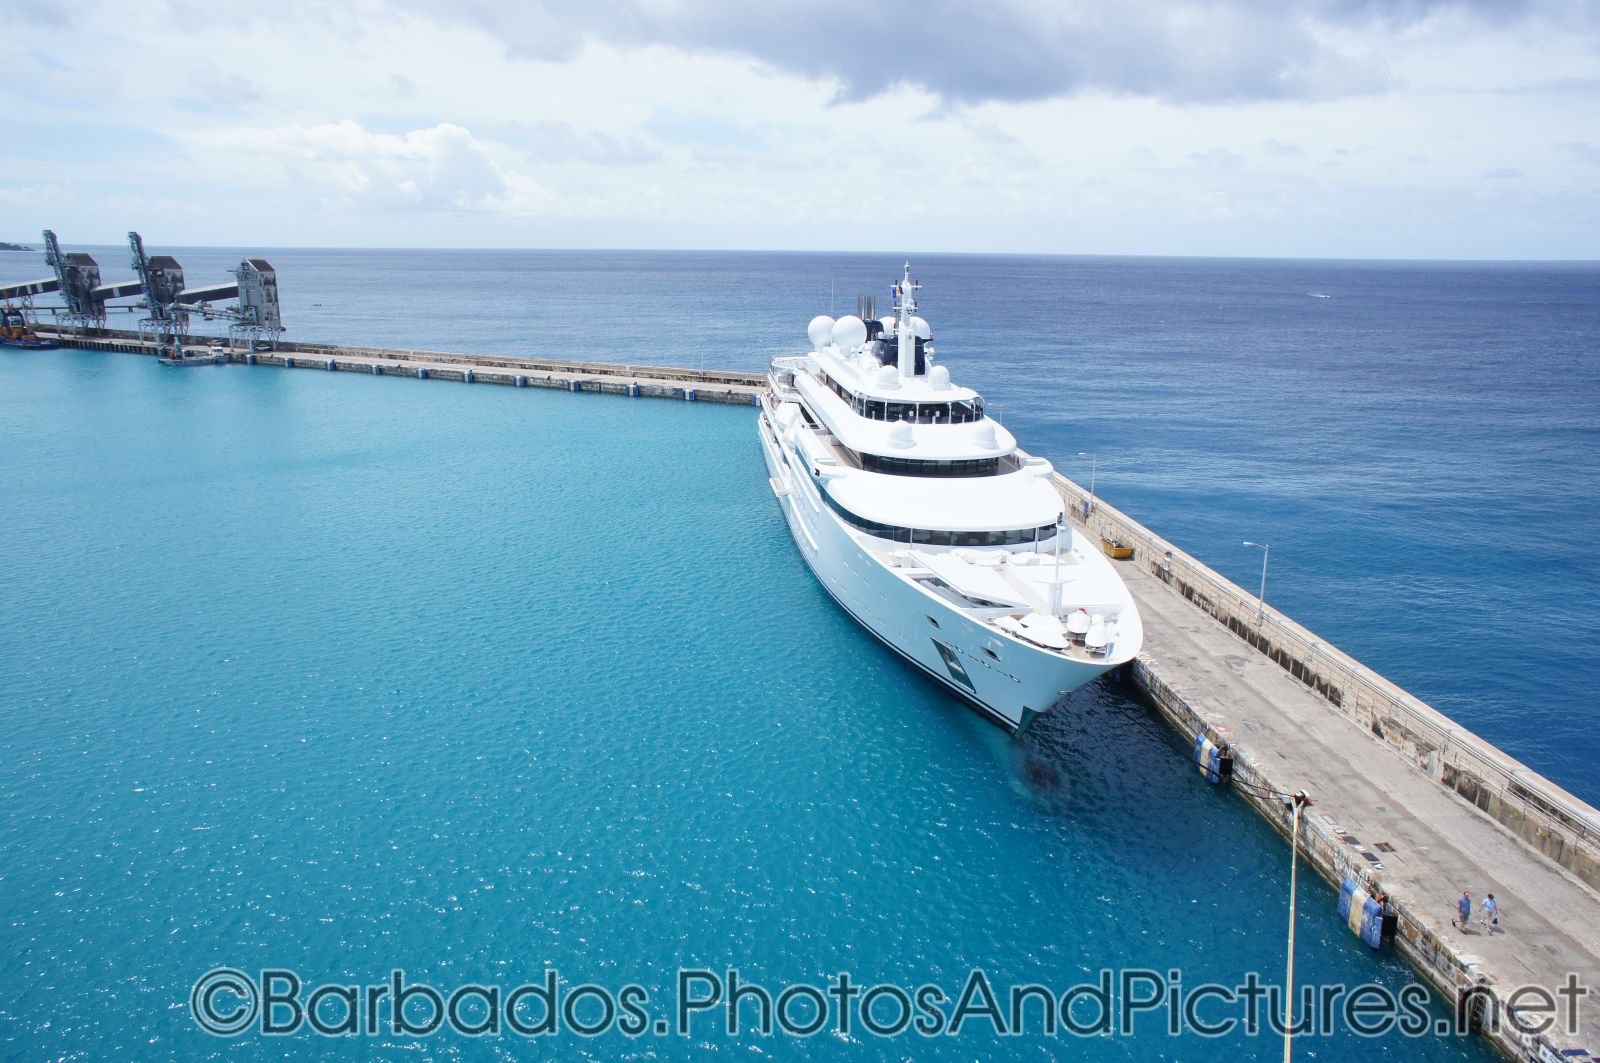 Large yacht docked at Bridgetown Barbados.jpg
